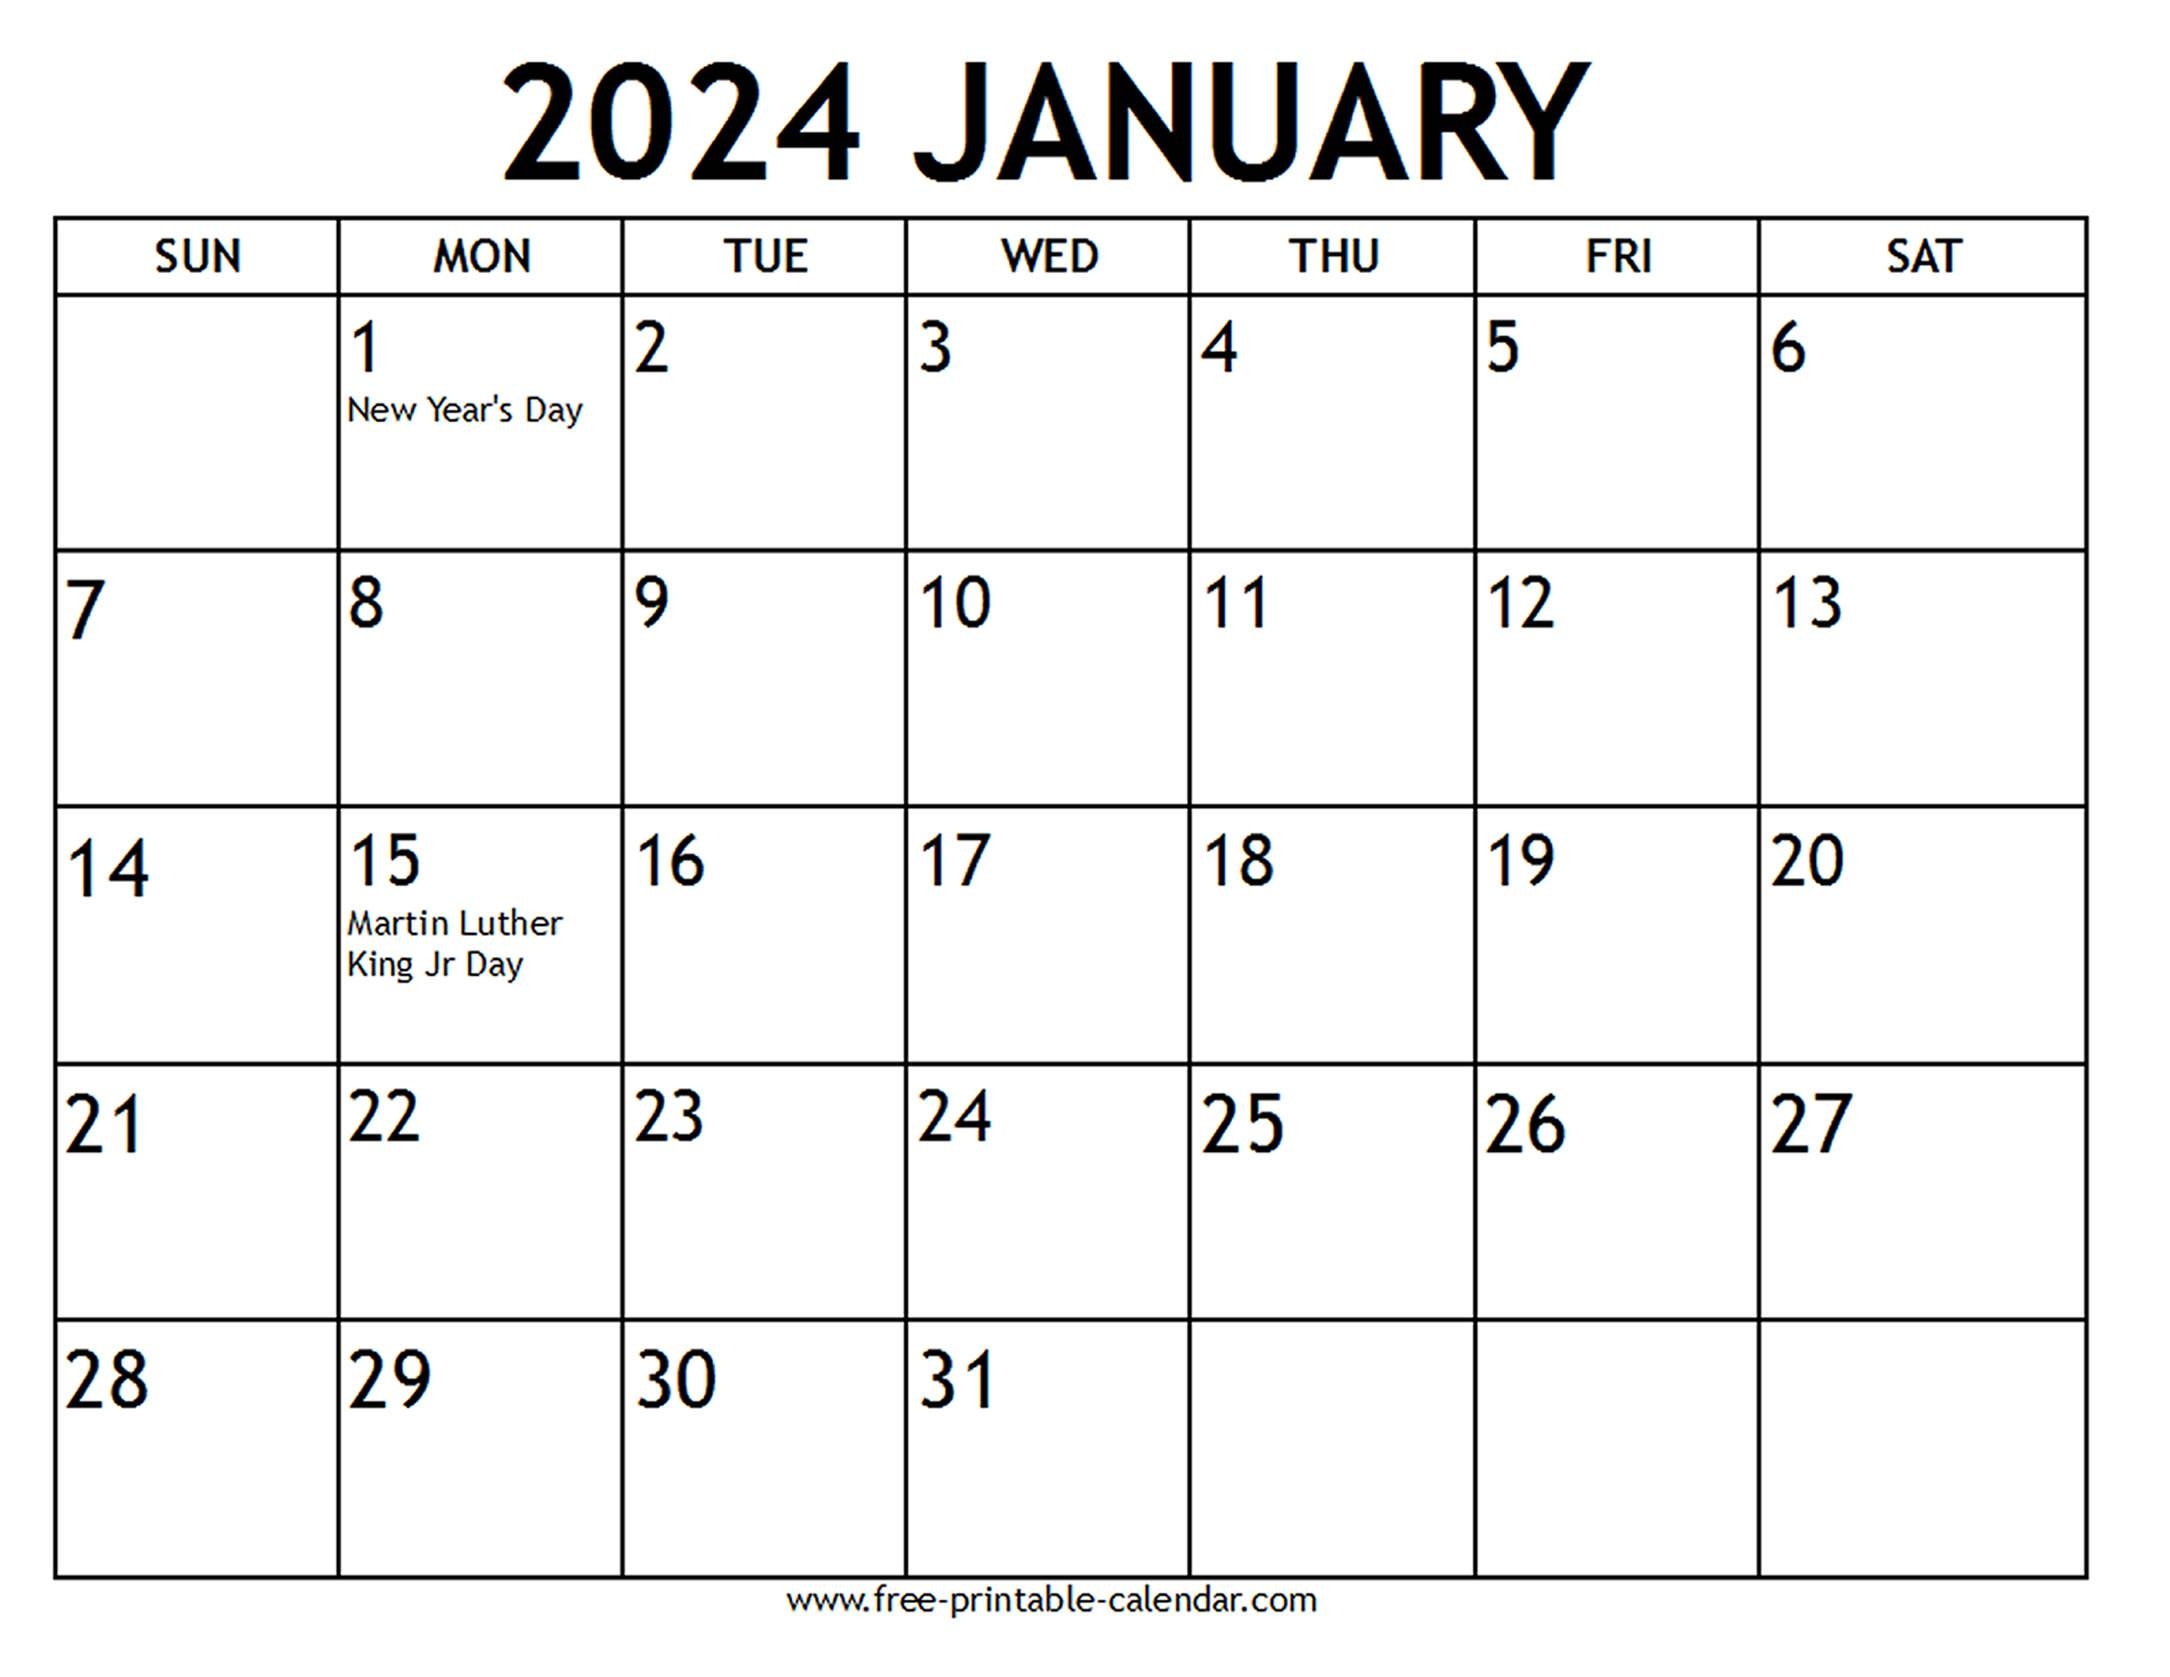 January 2024 Calendar Us Holidays - Free-Printable-Calendar throughout Free Printable Calendar 2024 With Holidays Usa